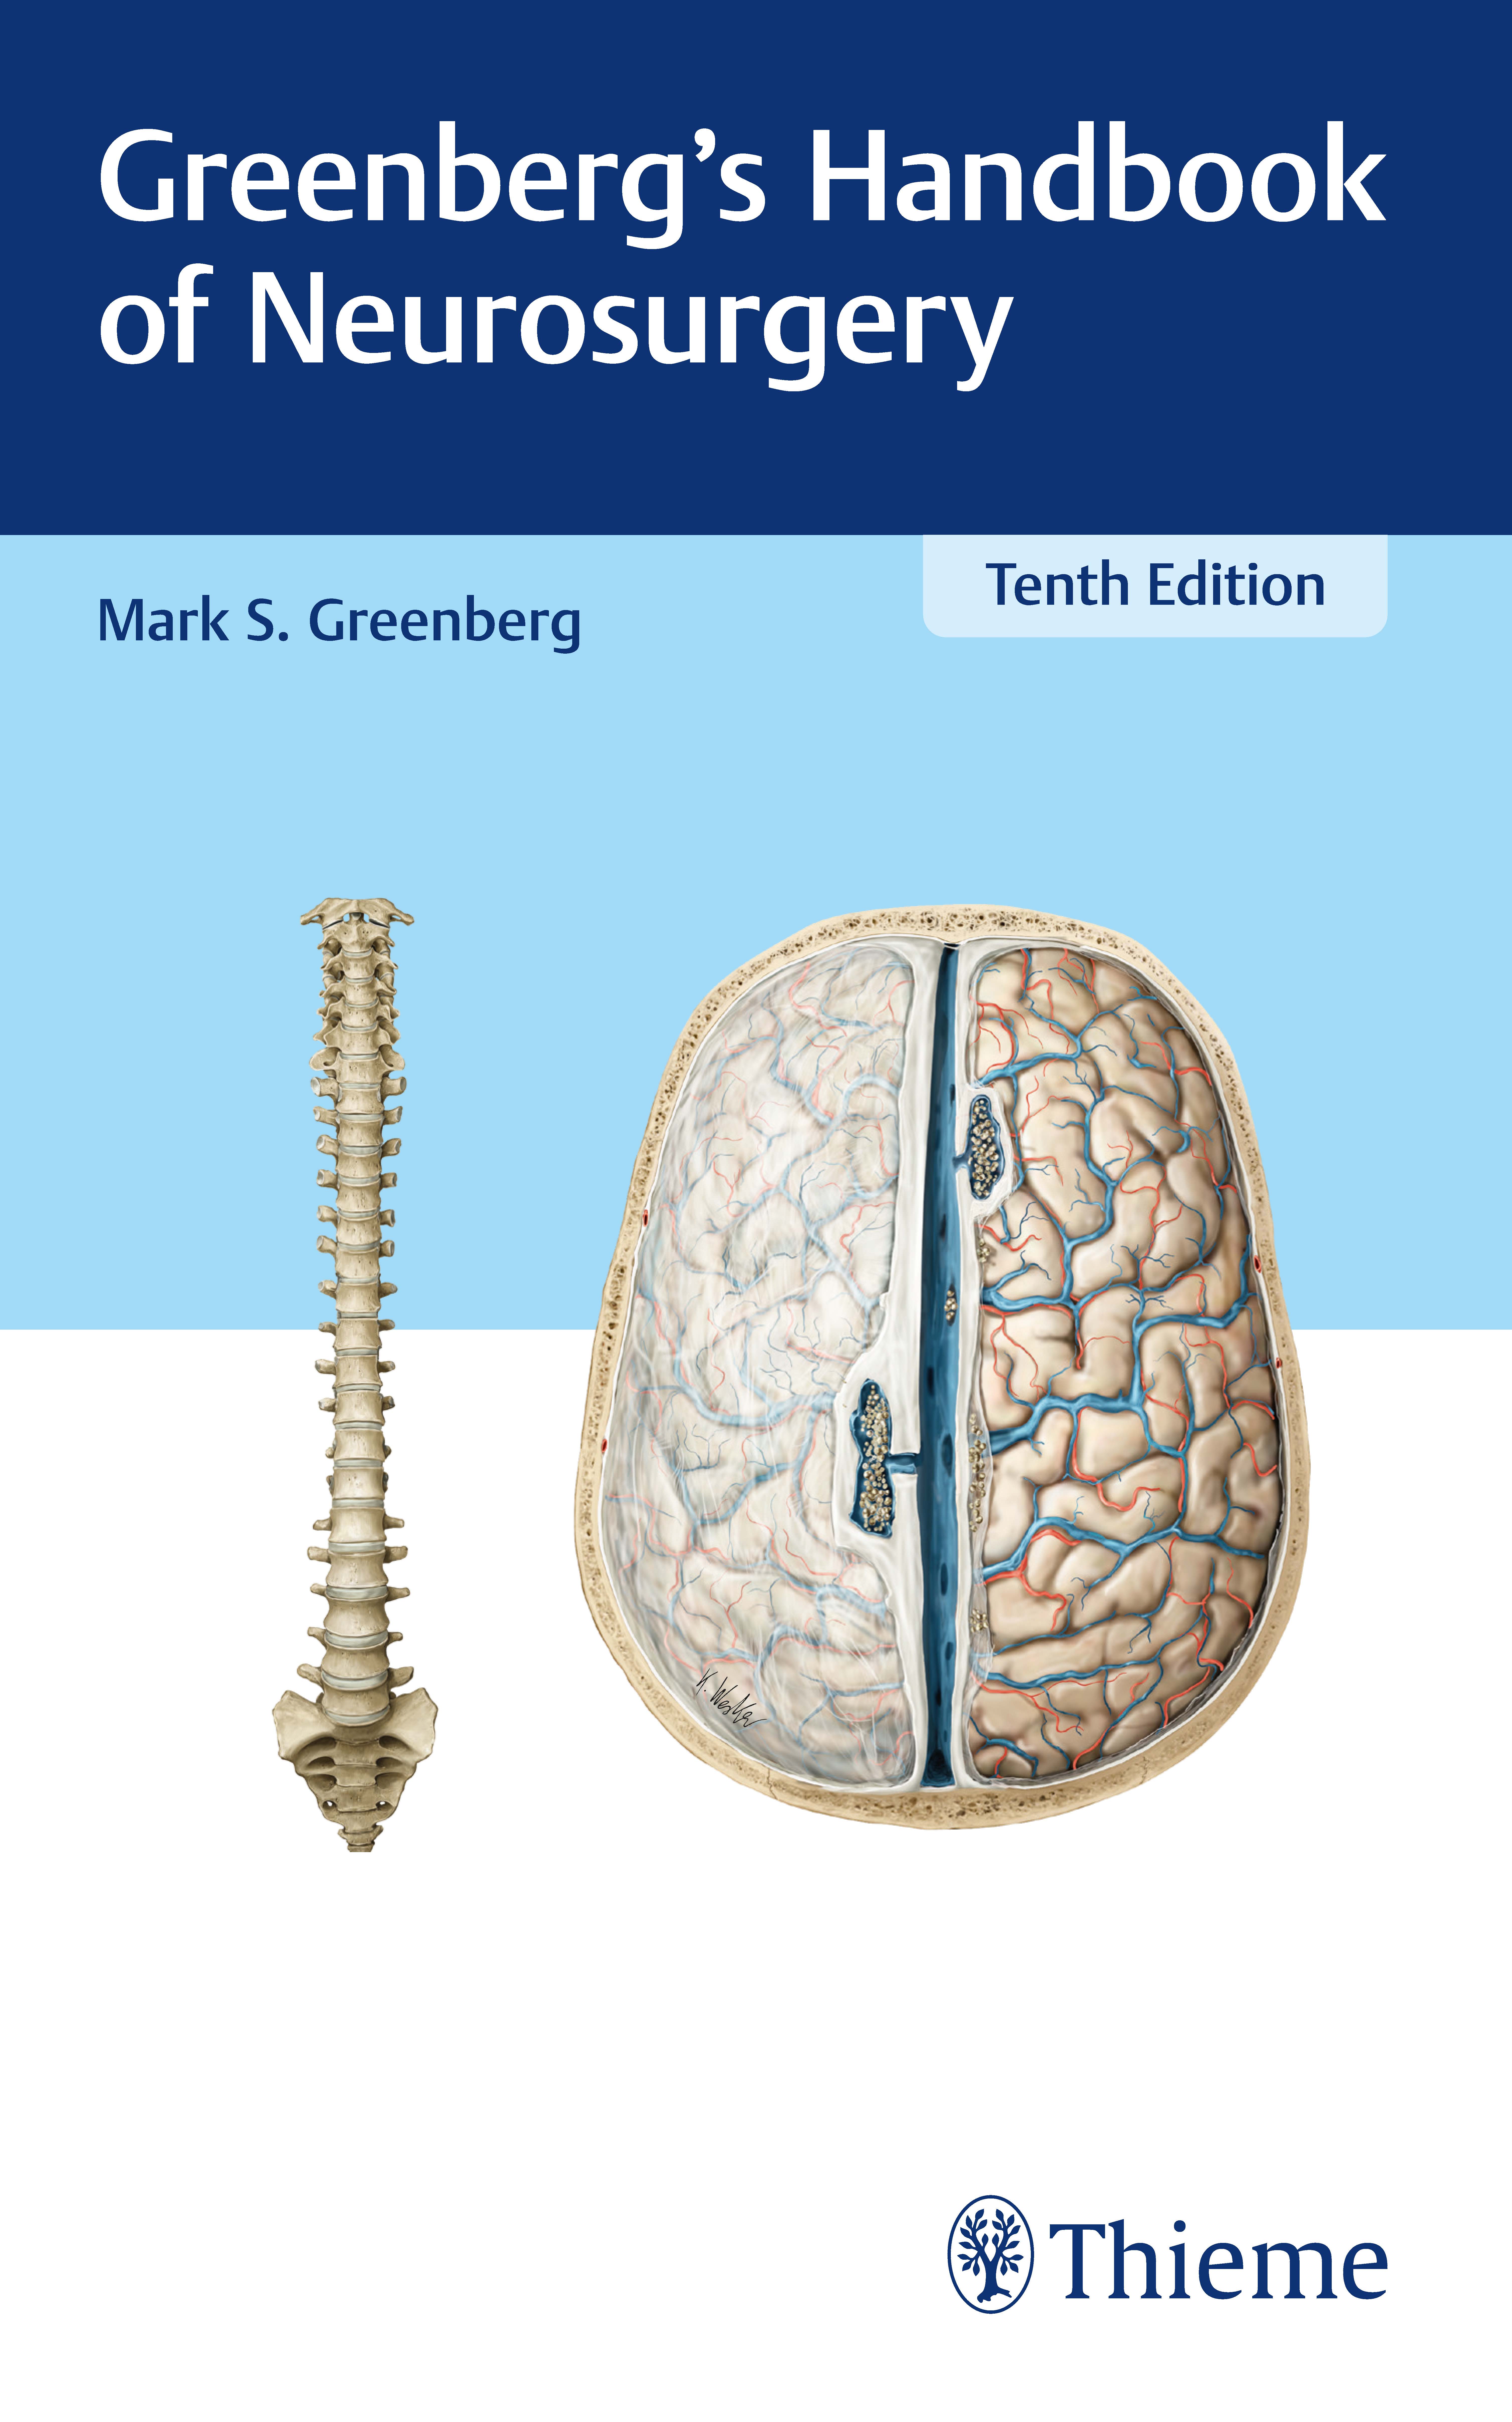 کتابچه راهنمای جراحی مغز و اعصاب GREENBERG 2 Vol 2023 - نورولوژی